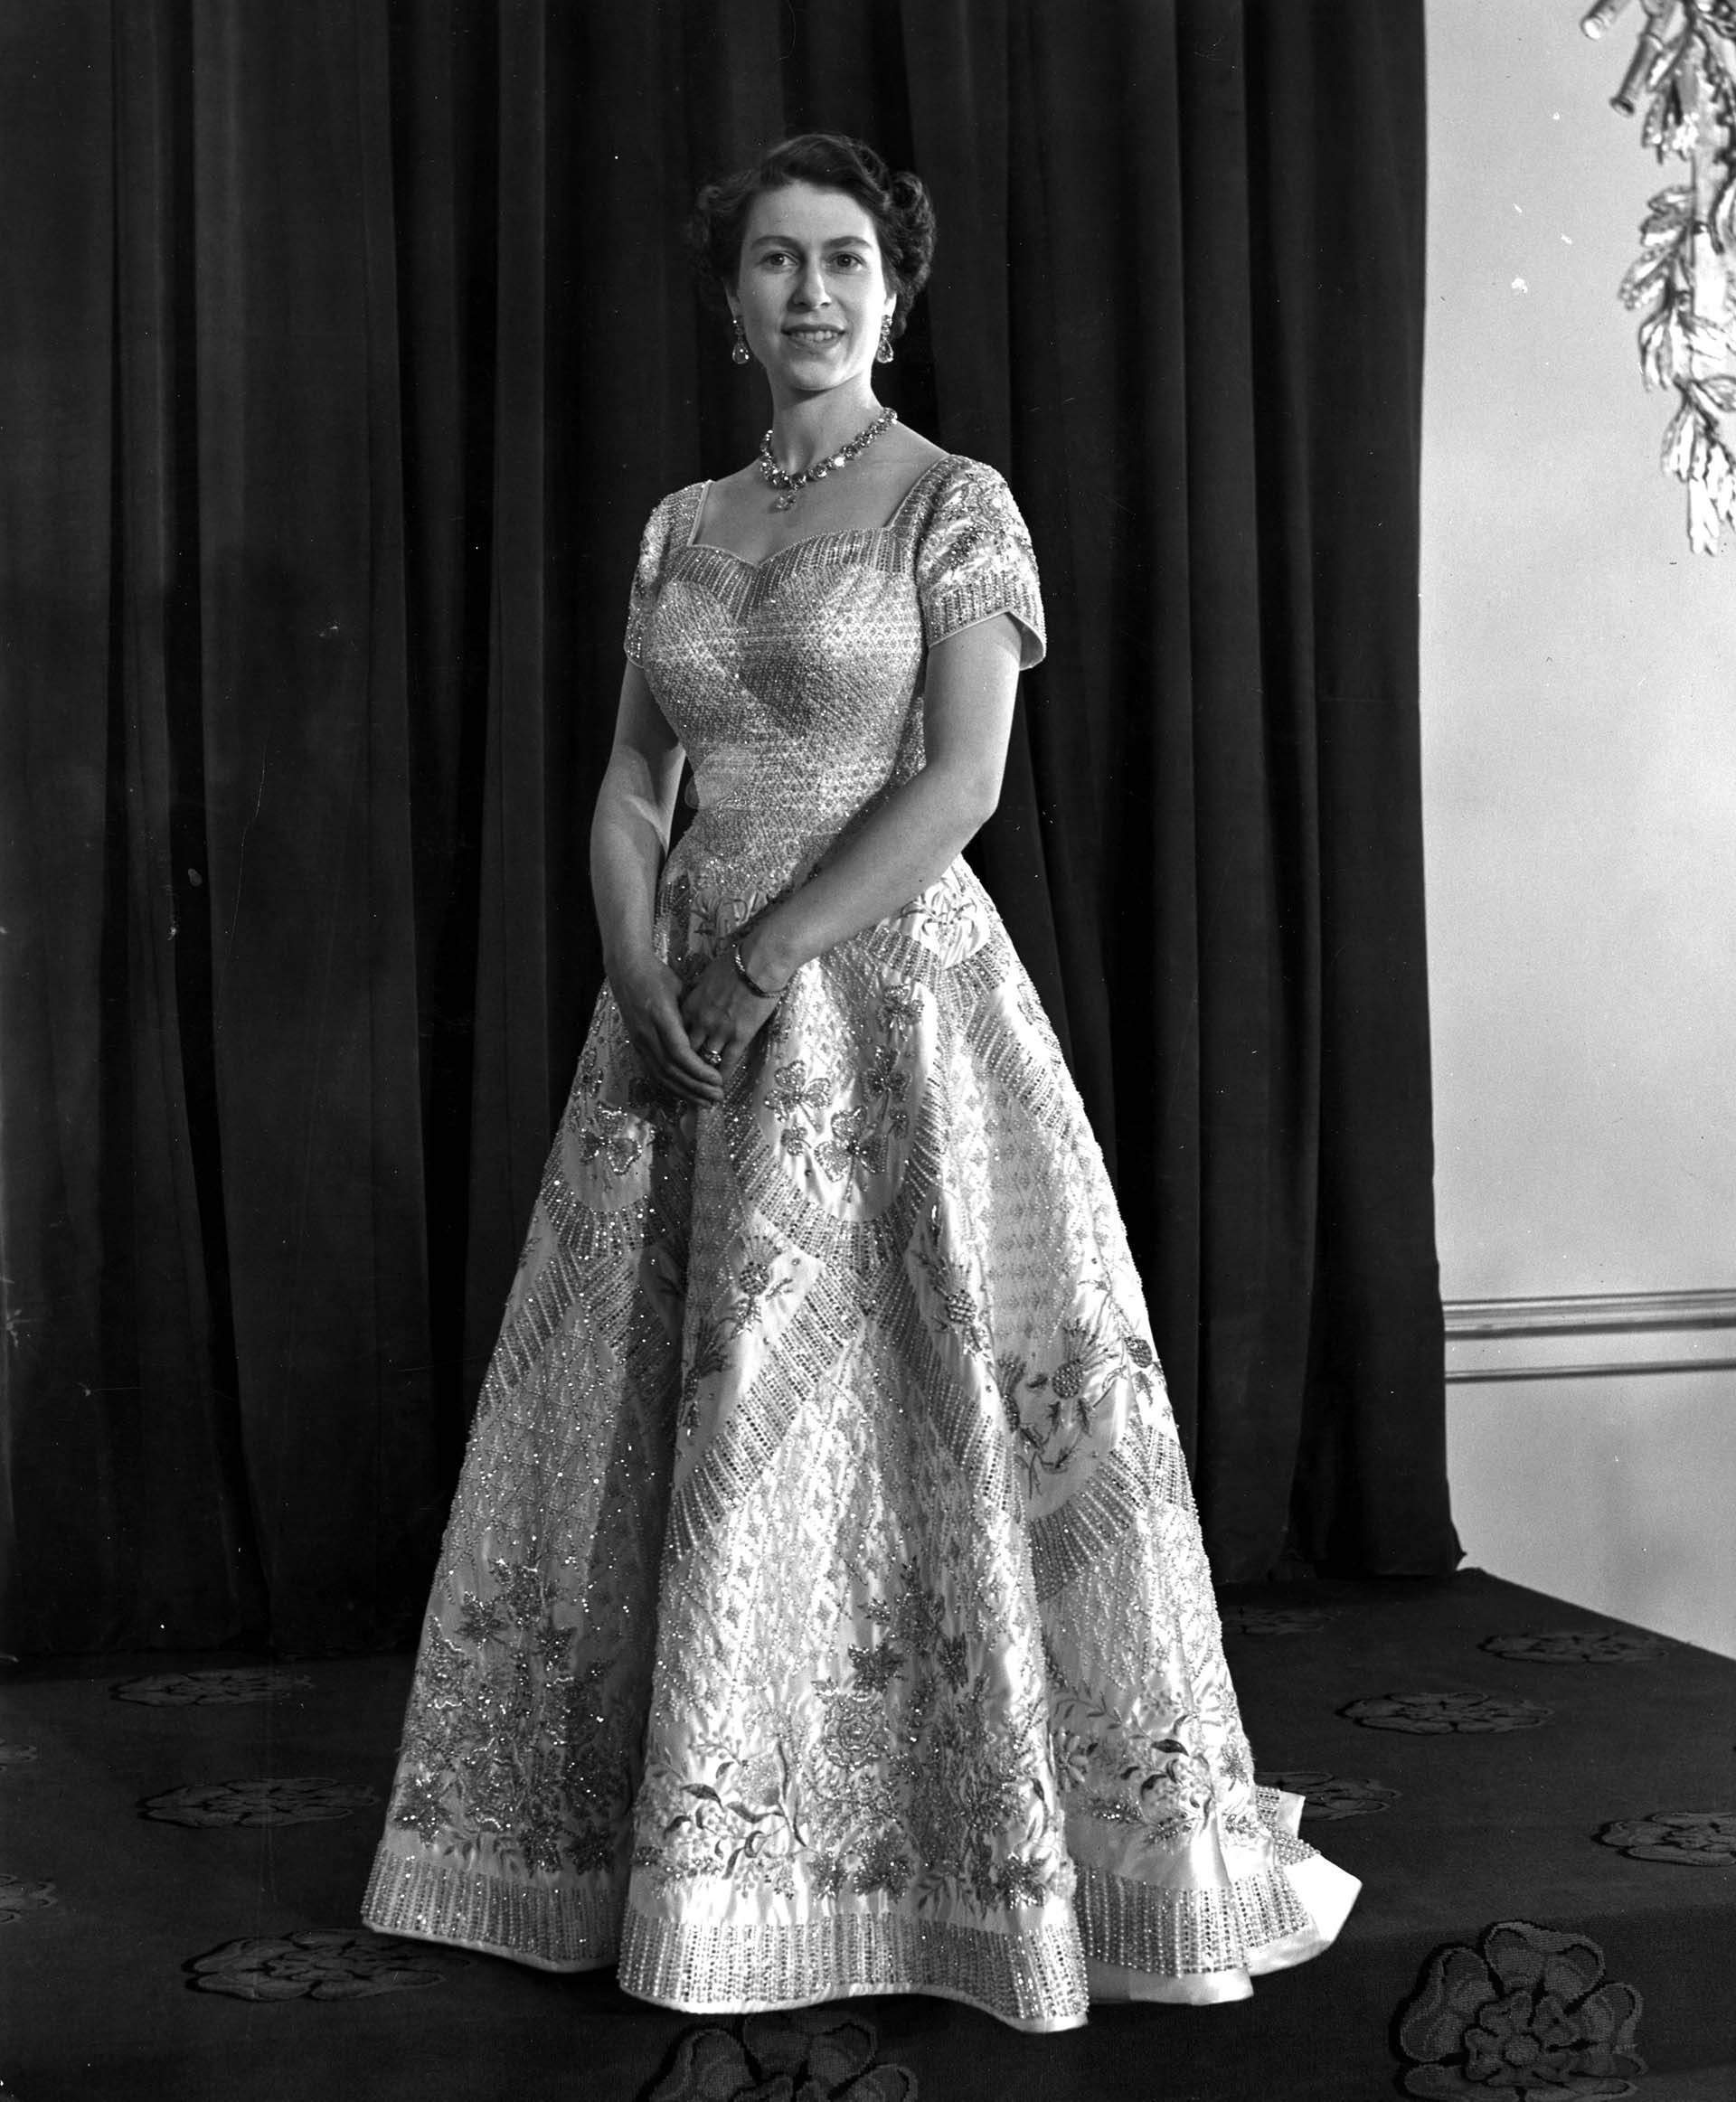 Primogénita de los duques de York y tercera nieta del rey Jorge V de Inglaterra, Isabel se convirtió en la heredera del trono cuando su padre fue coronado en 1936 con el nombre de Jorge VI (Central Press/Getty Images)